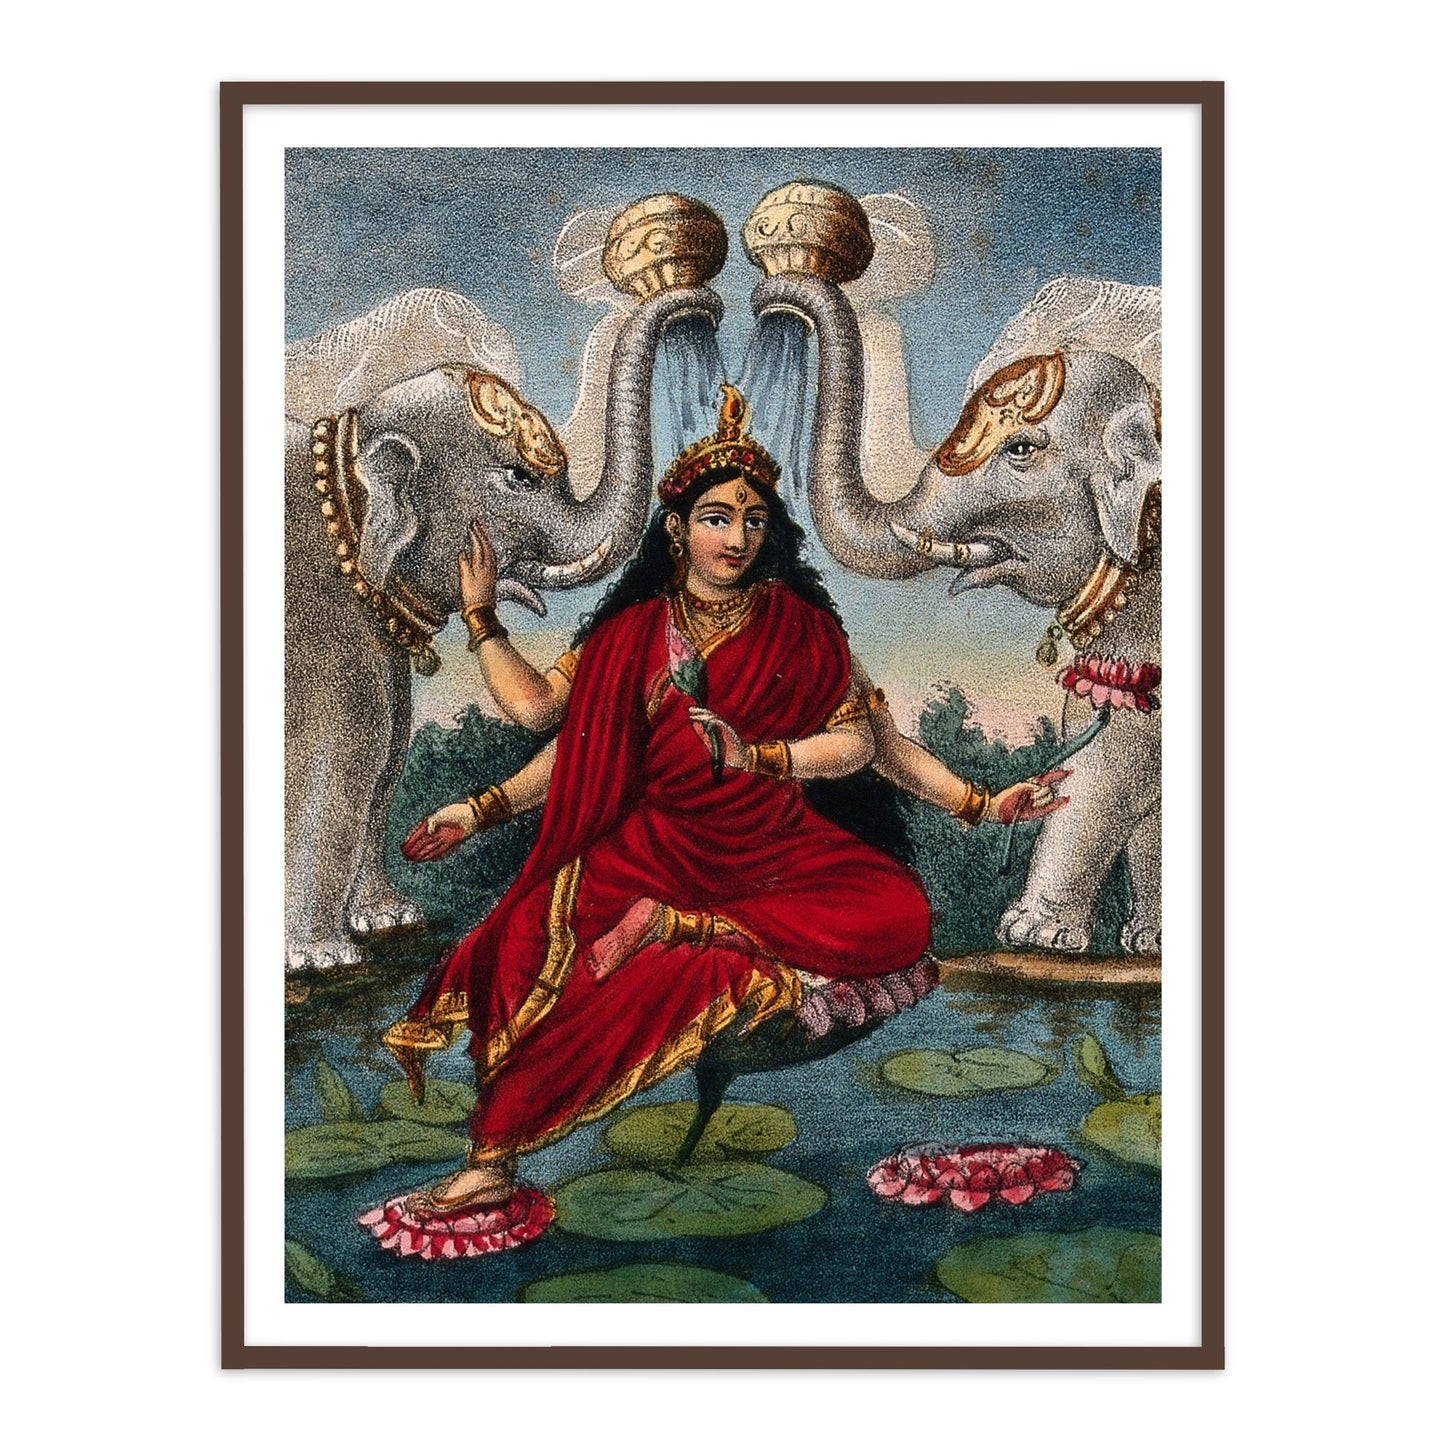 Gajalakshmi, Goddess of Fortune Framed Wall Art Painting for Home Decor